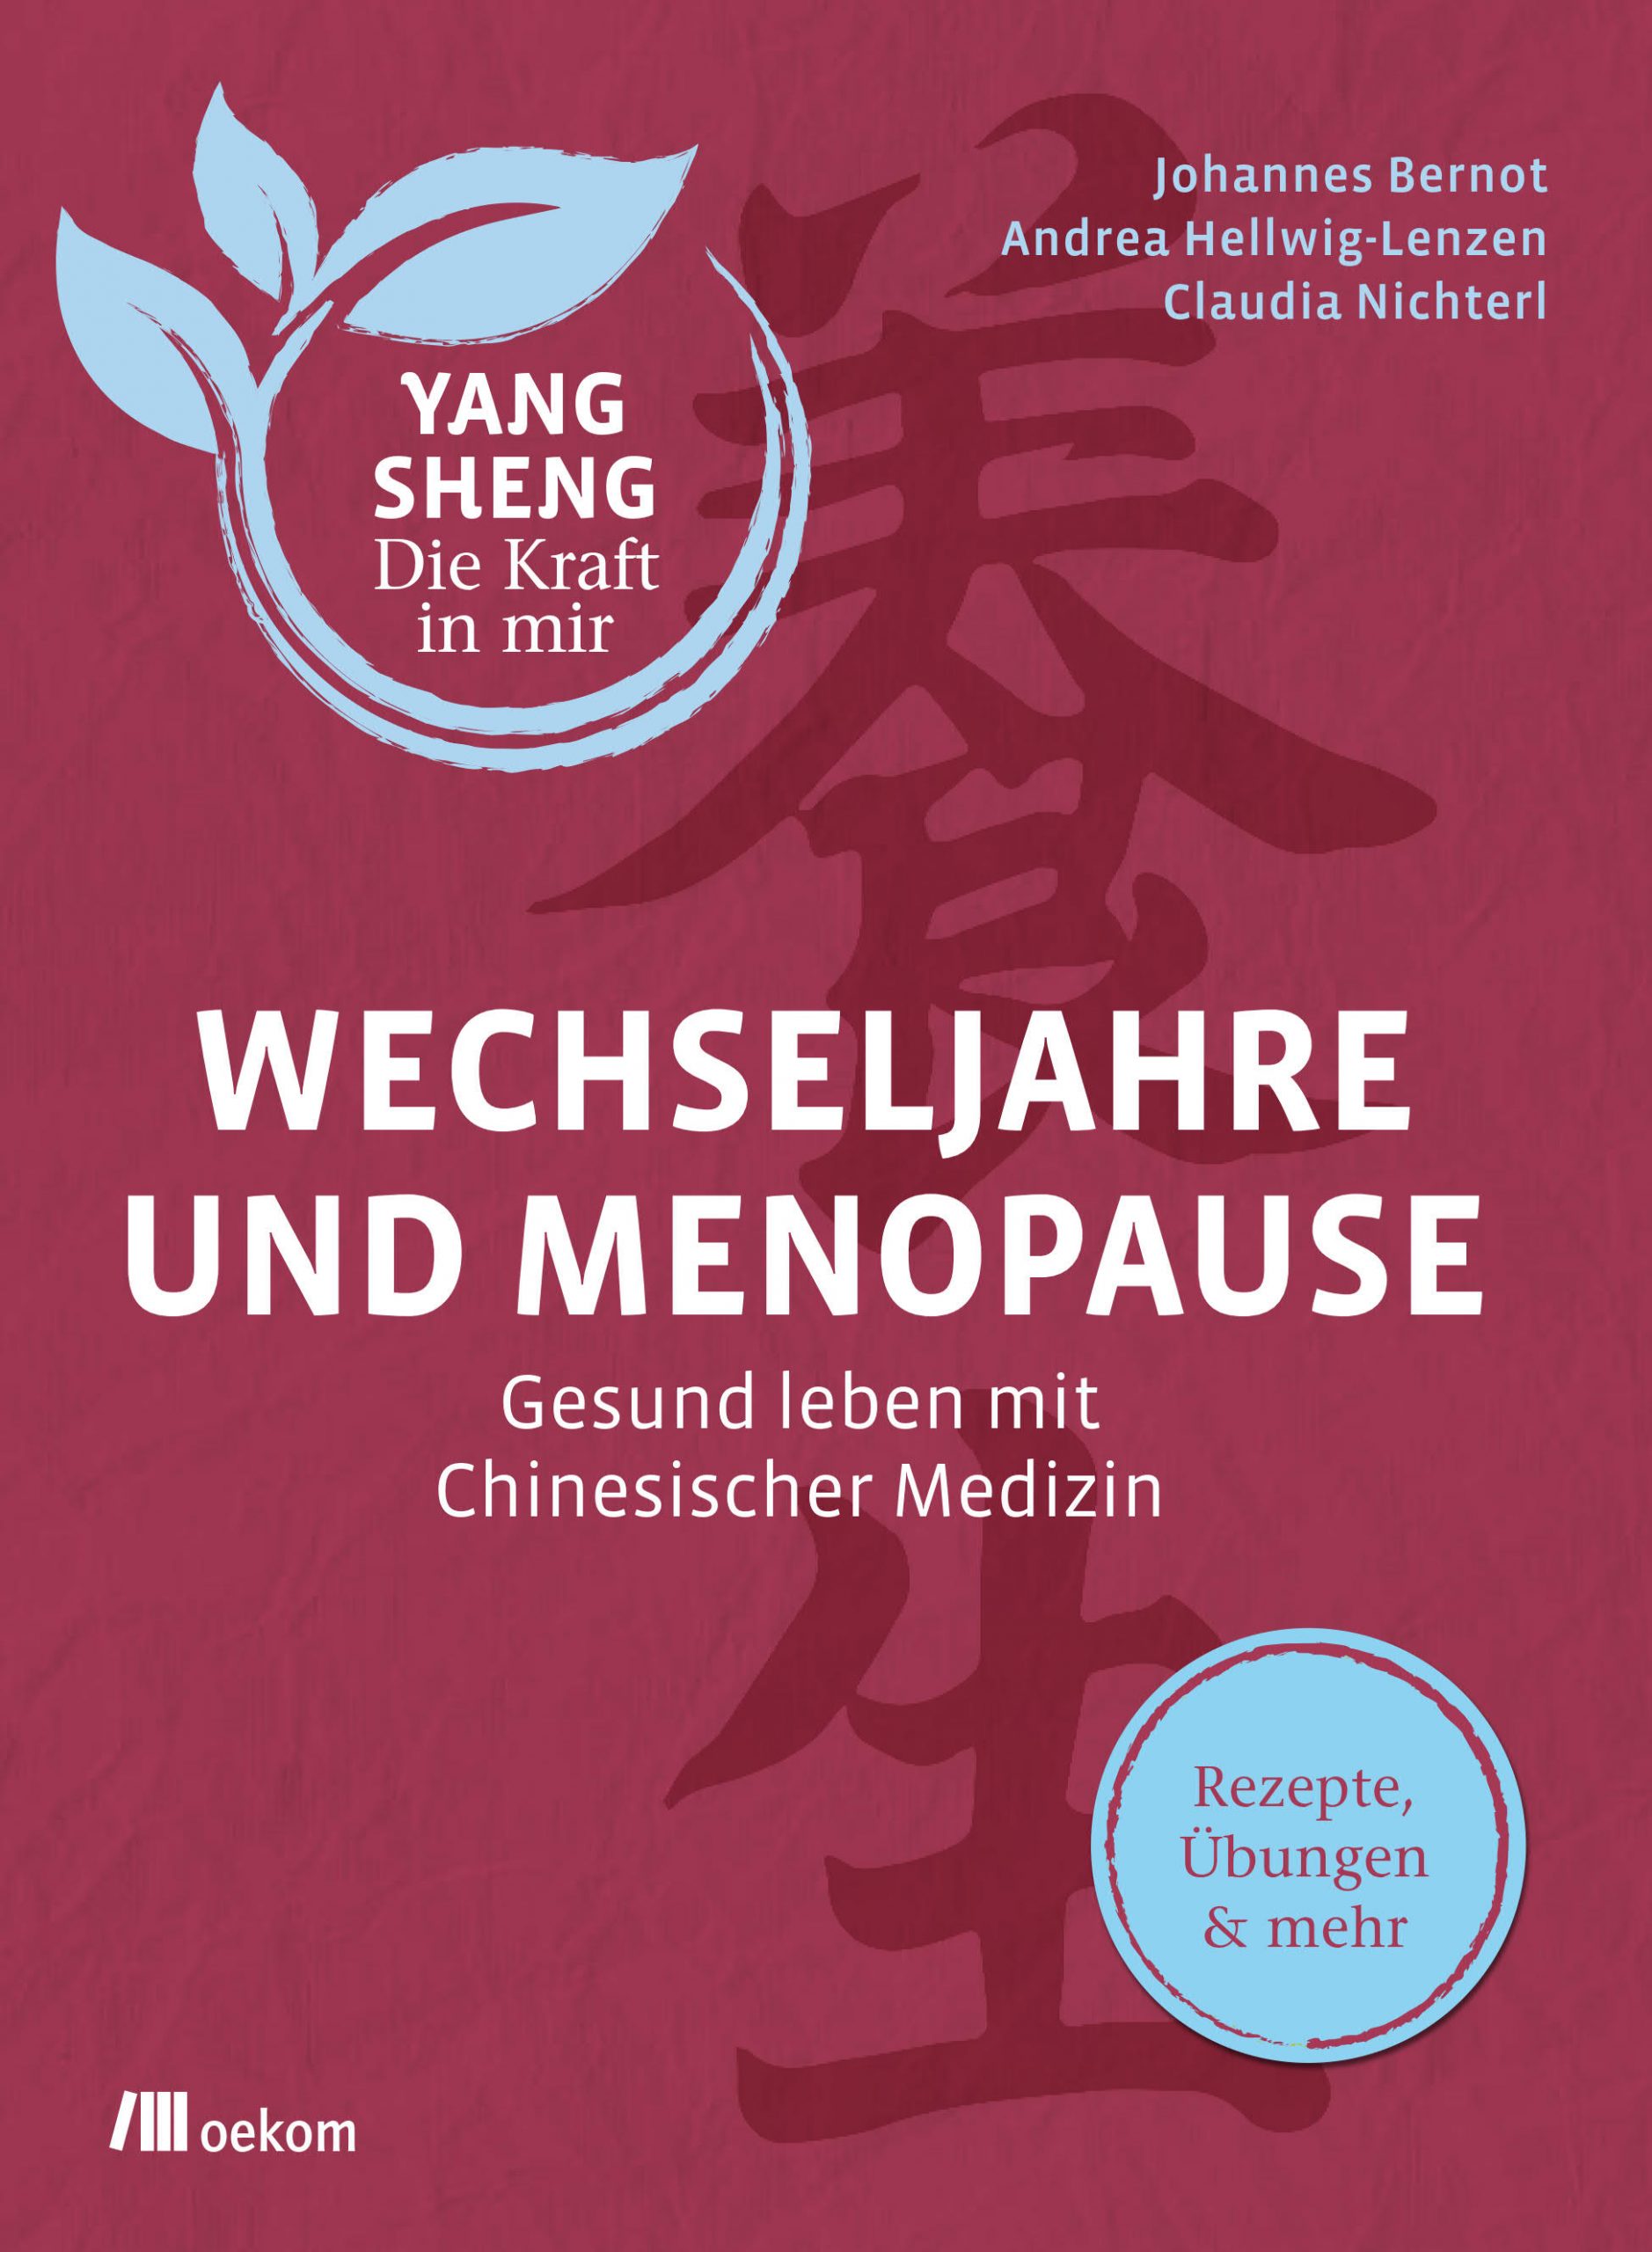 Buch-Cover Bernot, Hellwig-Lenzen, Nichterl: Wechseljahre und Menopause Gesund leben mit chinesischer Medizin